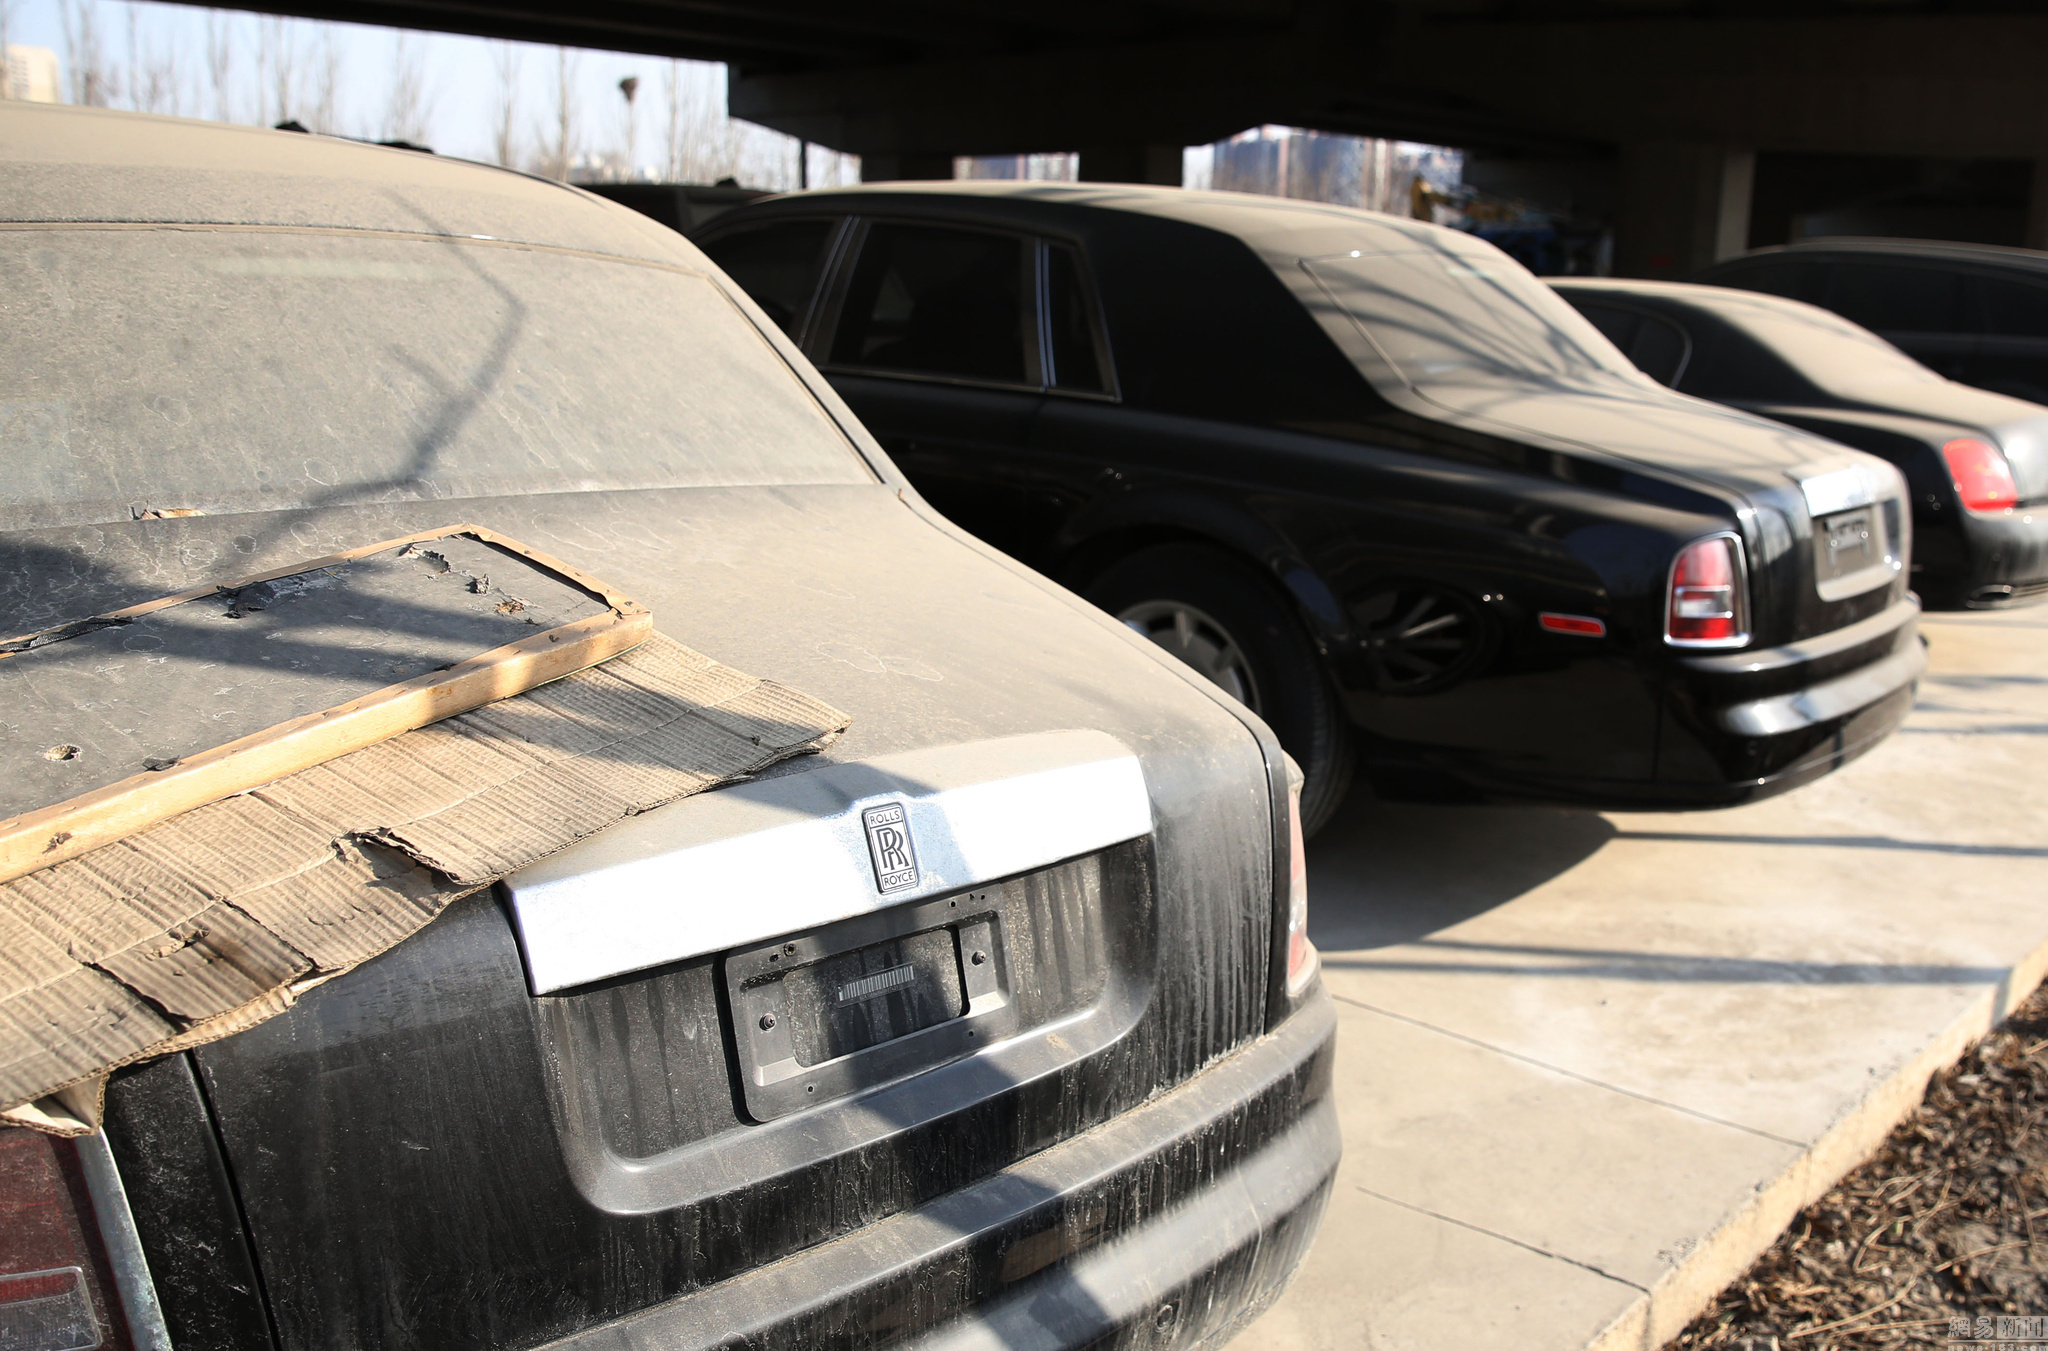 北京某橋下現豪車“車庫” 車輛佈滿灰塵